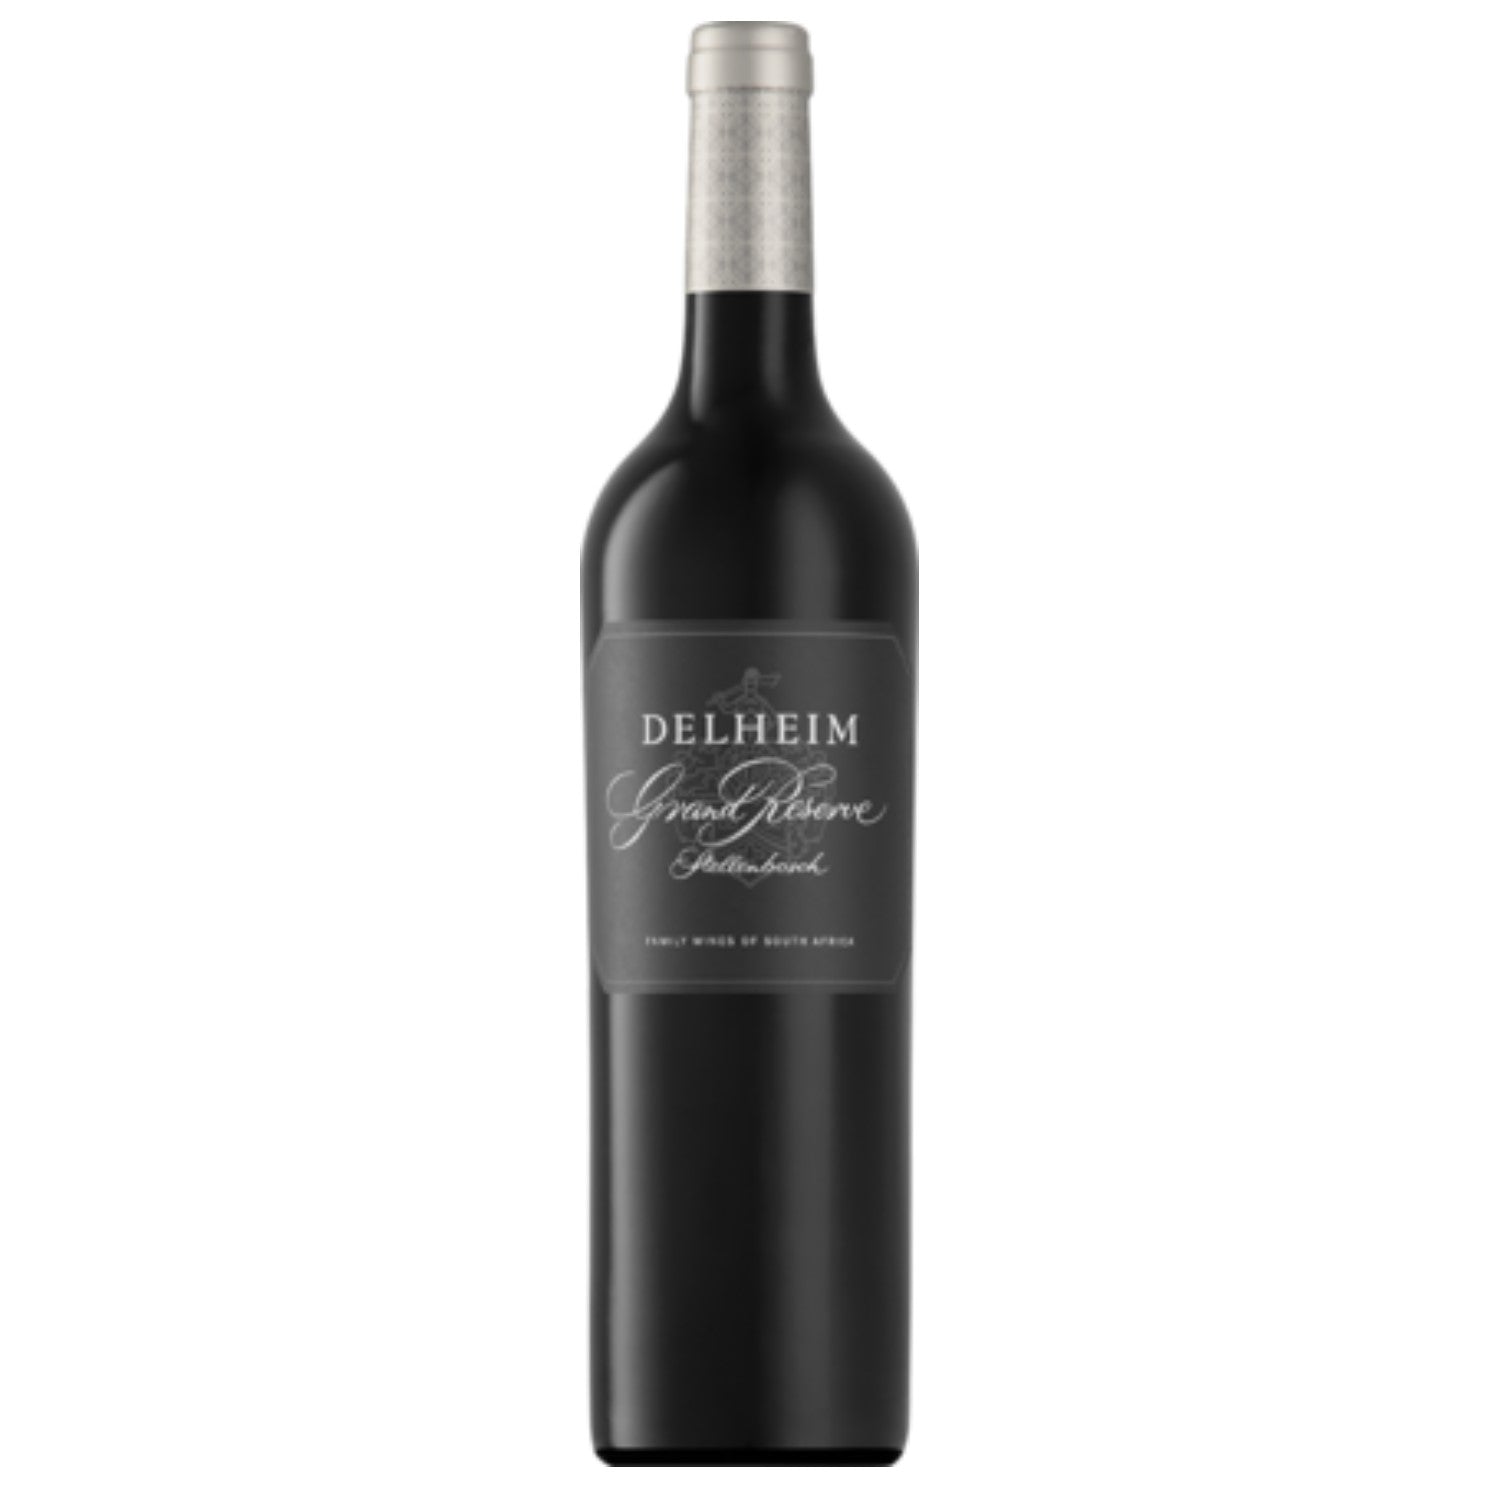 Delheim Grand Reserve Cabernet Sauvignon Stellenbosch Rotwein Wein trocken Südafrika (6 x 0.75l) - Versanel -